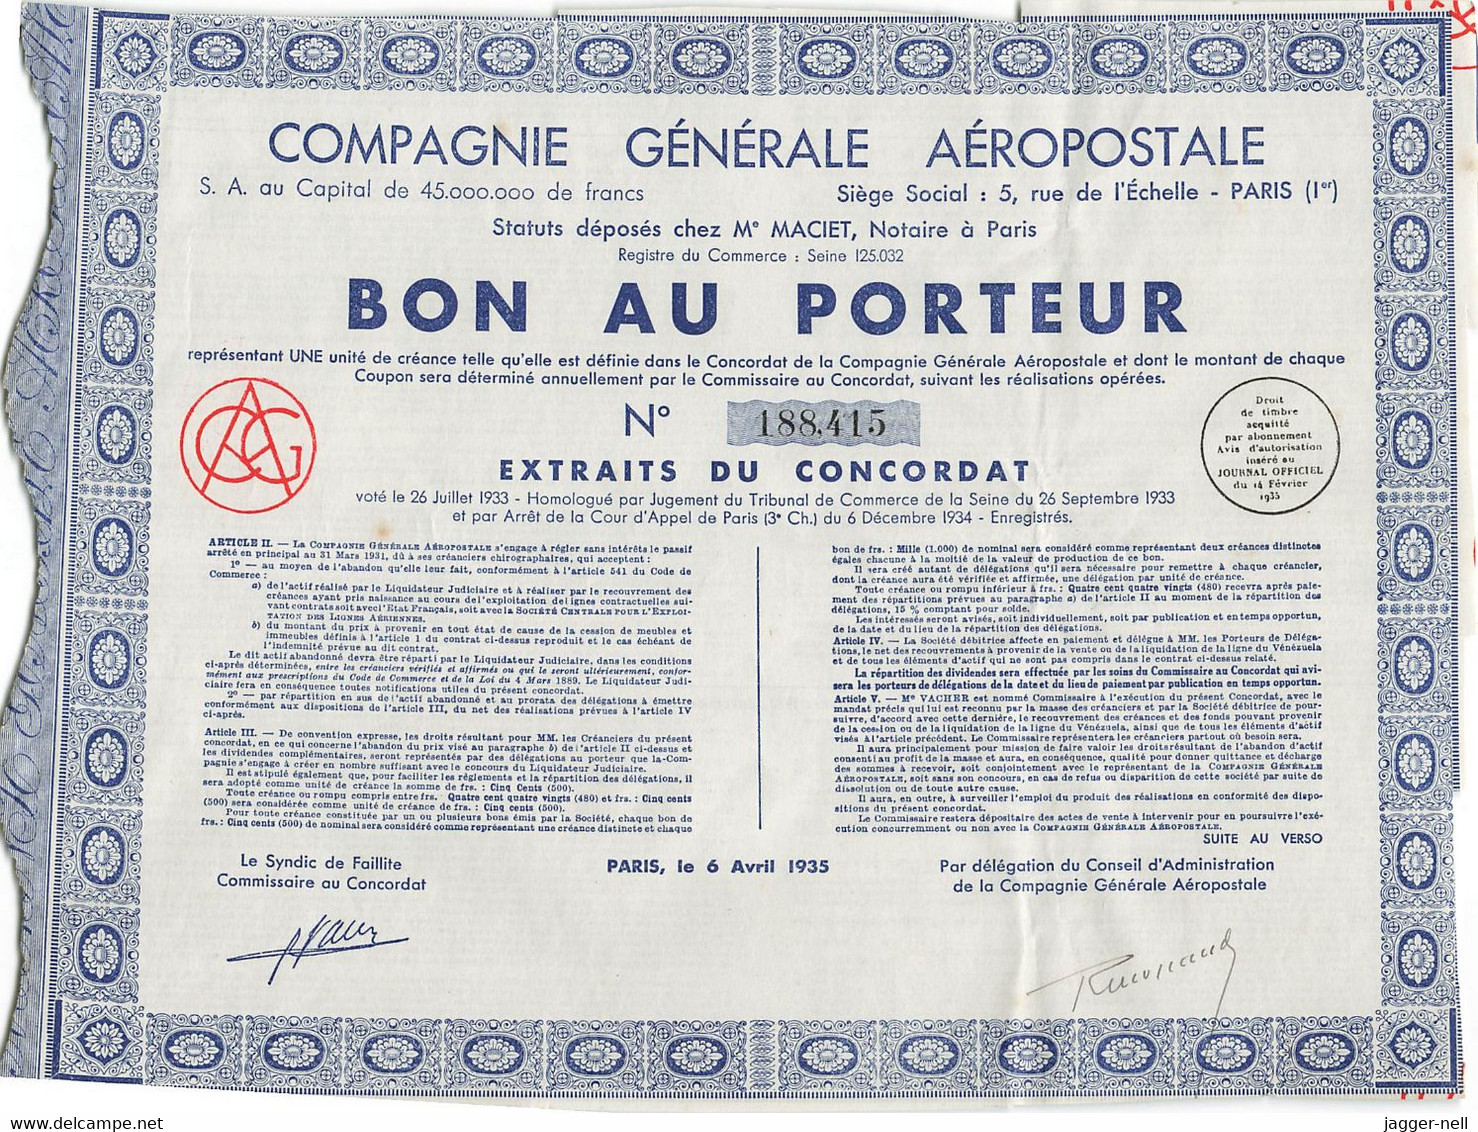 Superbe Lot De 40 "Bon Au Porteur" Compagnie Générale Aéropostale - Aviation - 6 Avril 1935 - N°188 410 à 188 530 - - Aviación